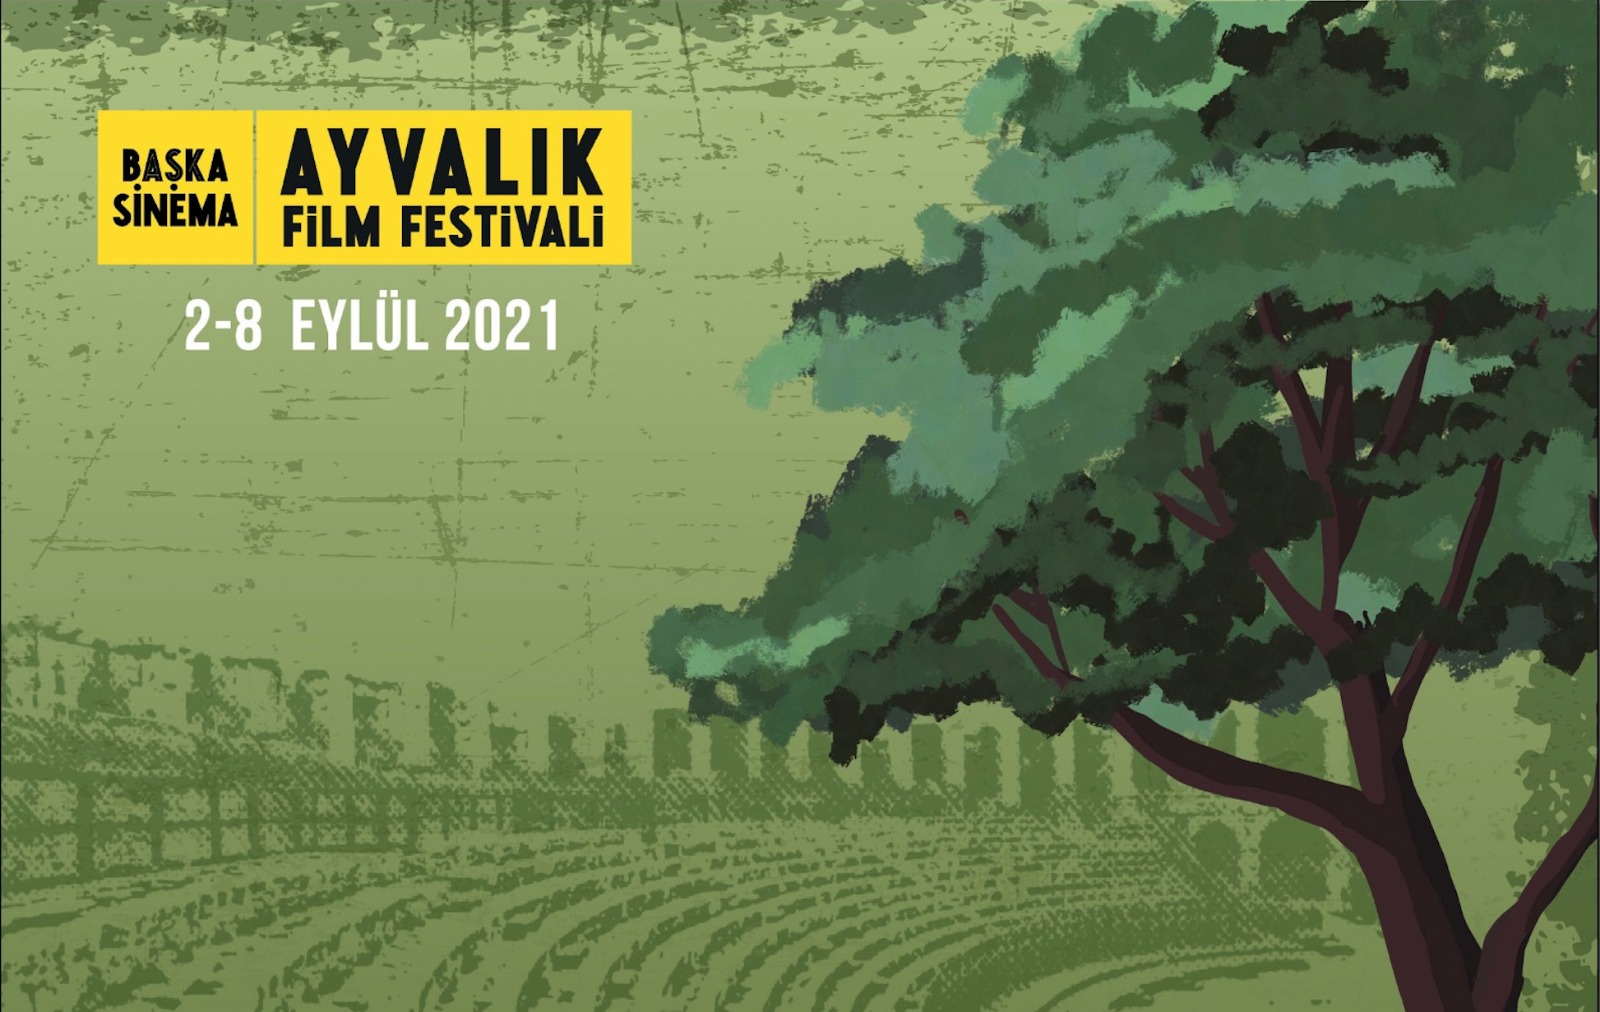 Başka Sinema'nın düzenlediği festival 2020-2021 yılından önce çıkan sinema yapımlarını bir araya getirirken çok kıymetli buluşmalara de yol açıyor.